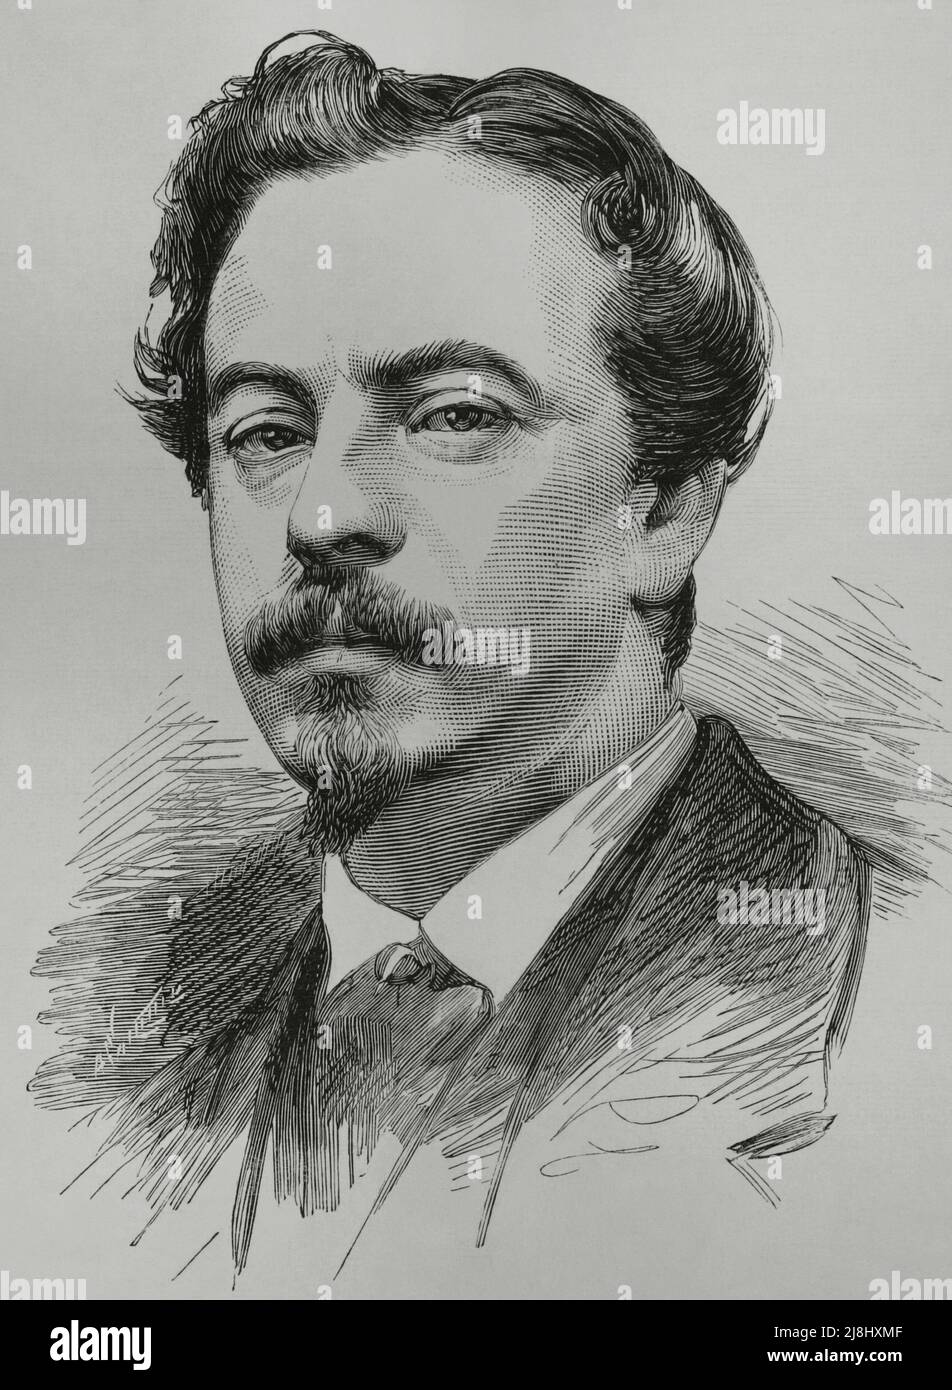 Ignacio Suarez Llanos (1830-1881). Peintre et illustrateur espagnol du 19th siècle. Portrait. Gravure, 1882. Banque D'Images